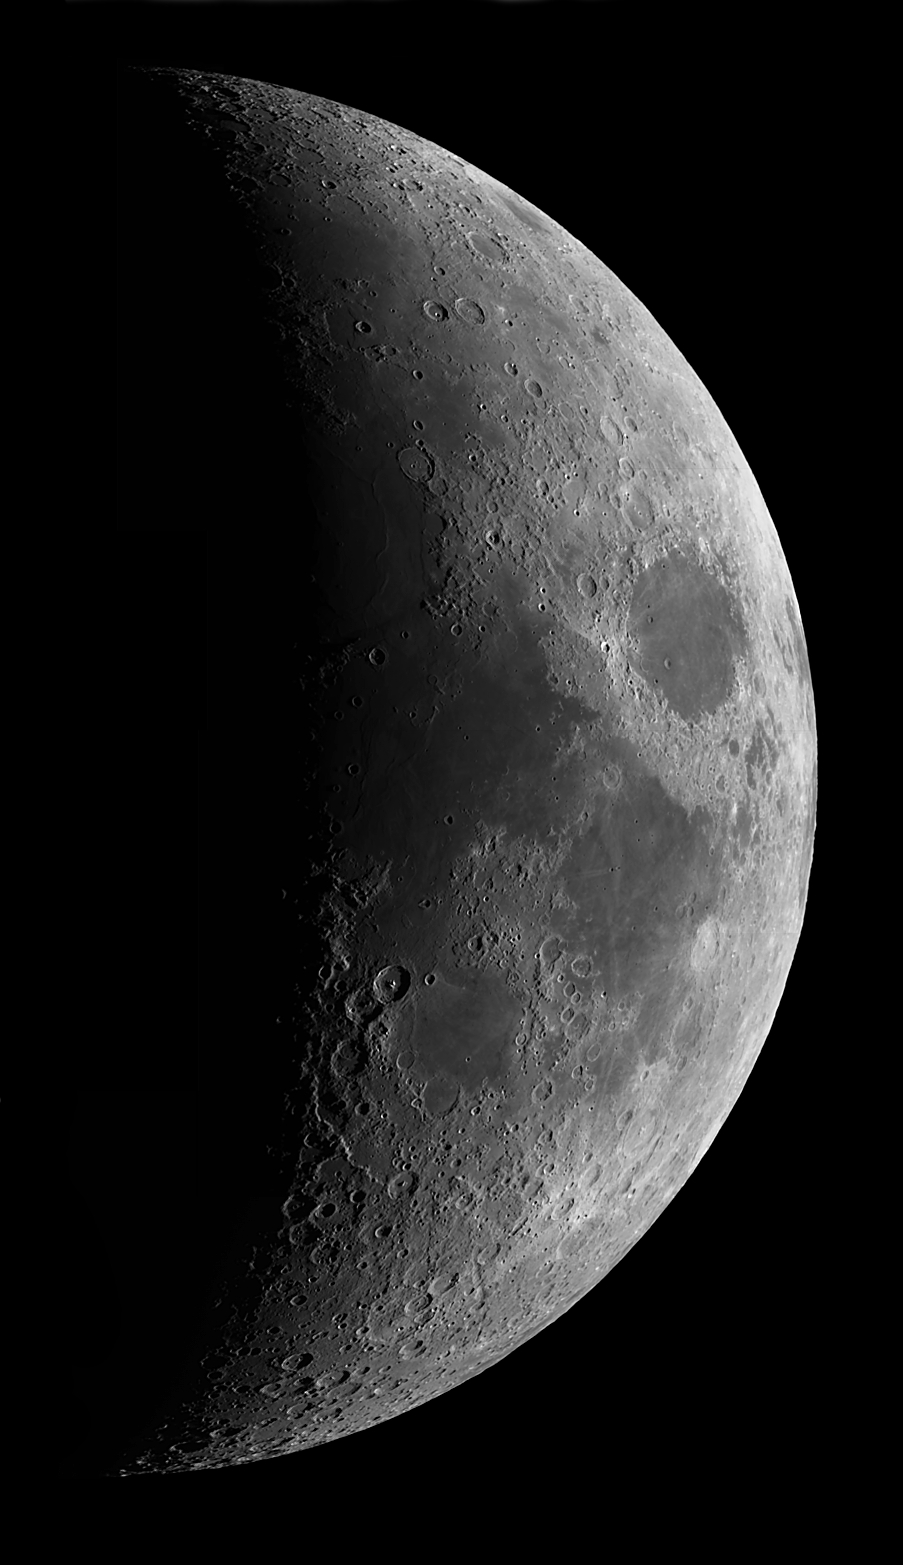 5776b56c5fcd9_lunarmosaic.JPG.9a608971f4